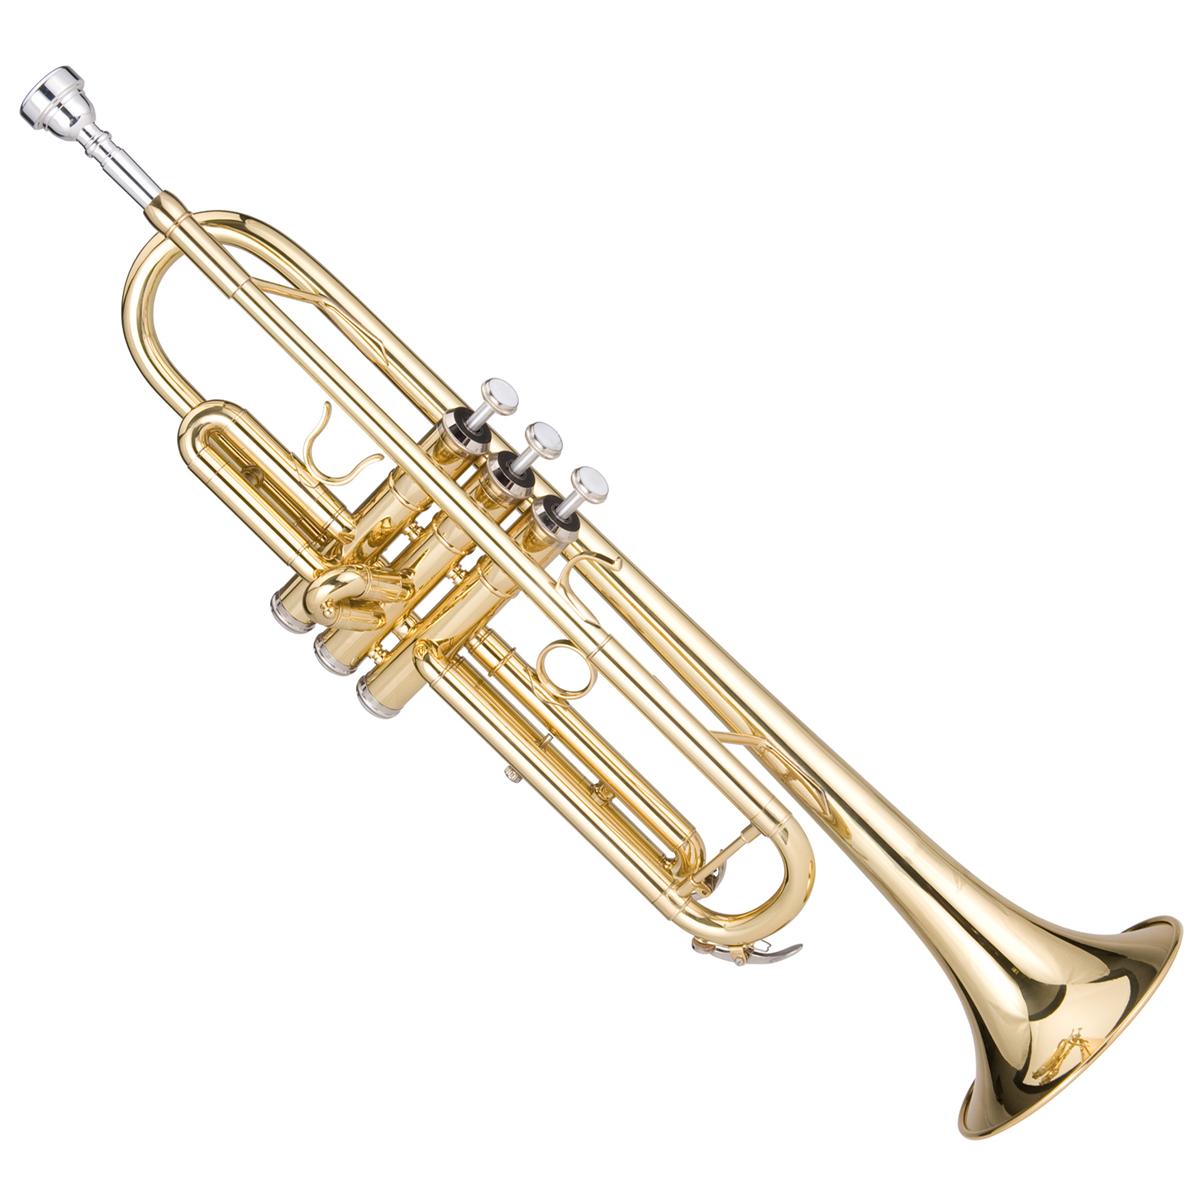 Le'Var Lv100 Bb Trumpet 